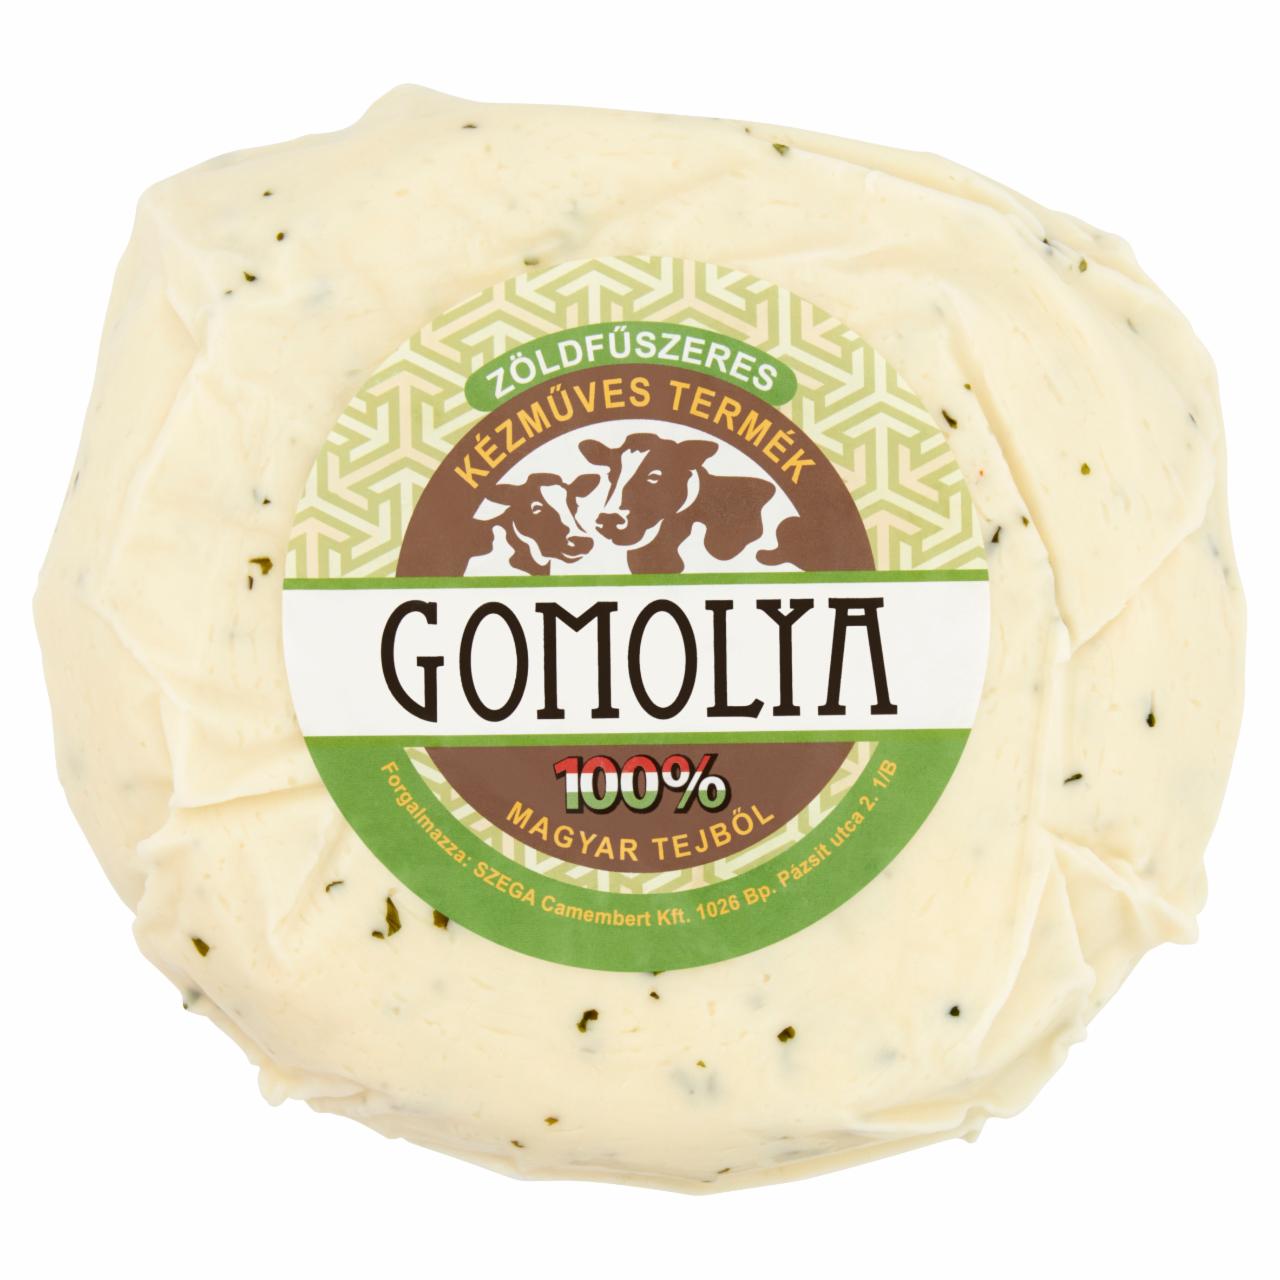 Képek - Zsíros, félkemény zöldfűszeres gomolya sajt